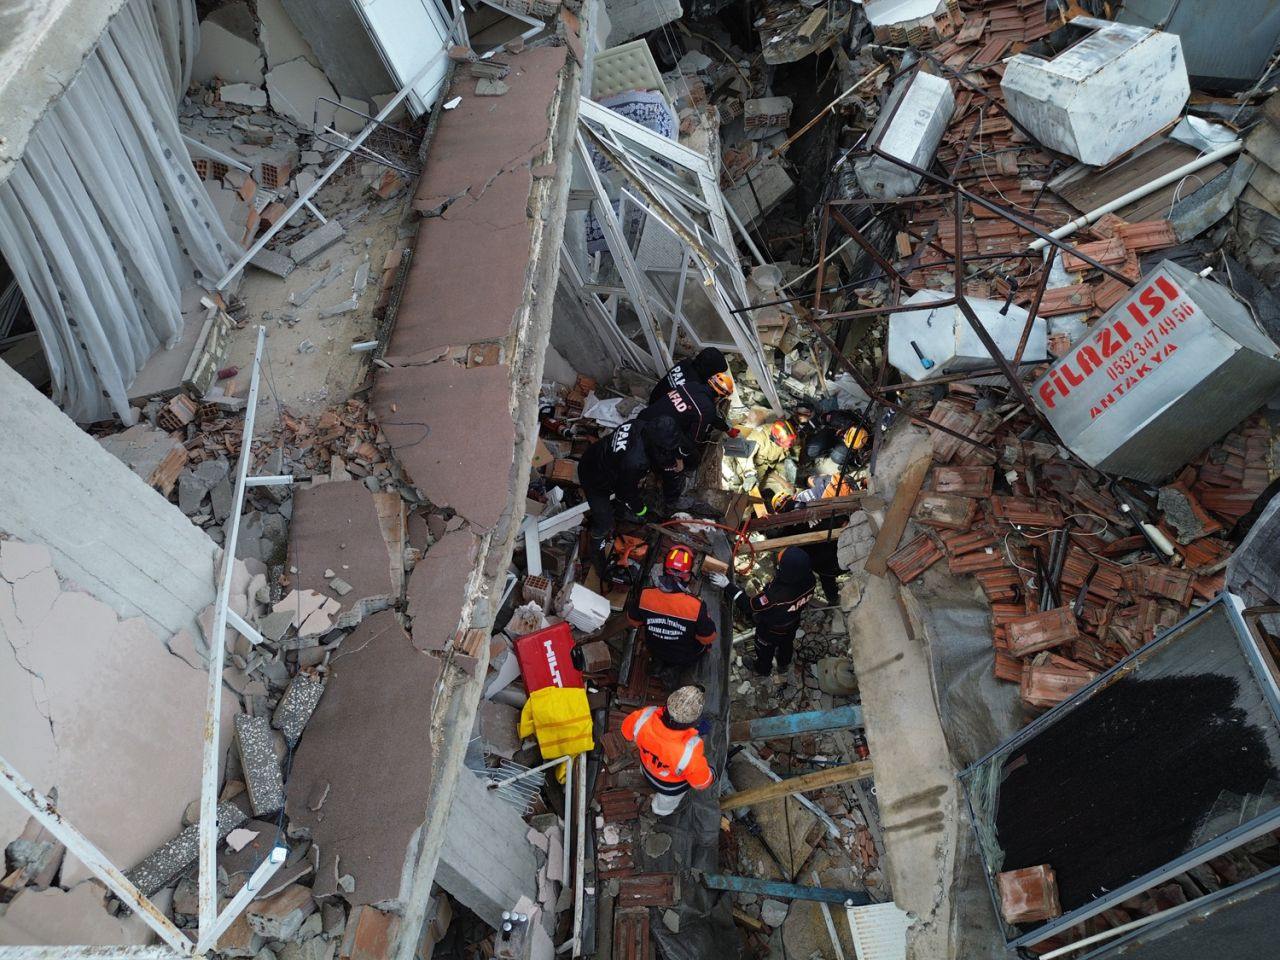 Hatay'daki 6.4'lük deprem! Bina yıkıldı enkaz alanı görüntülendi